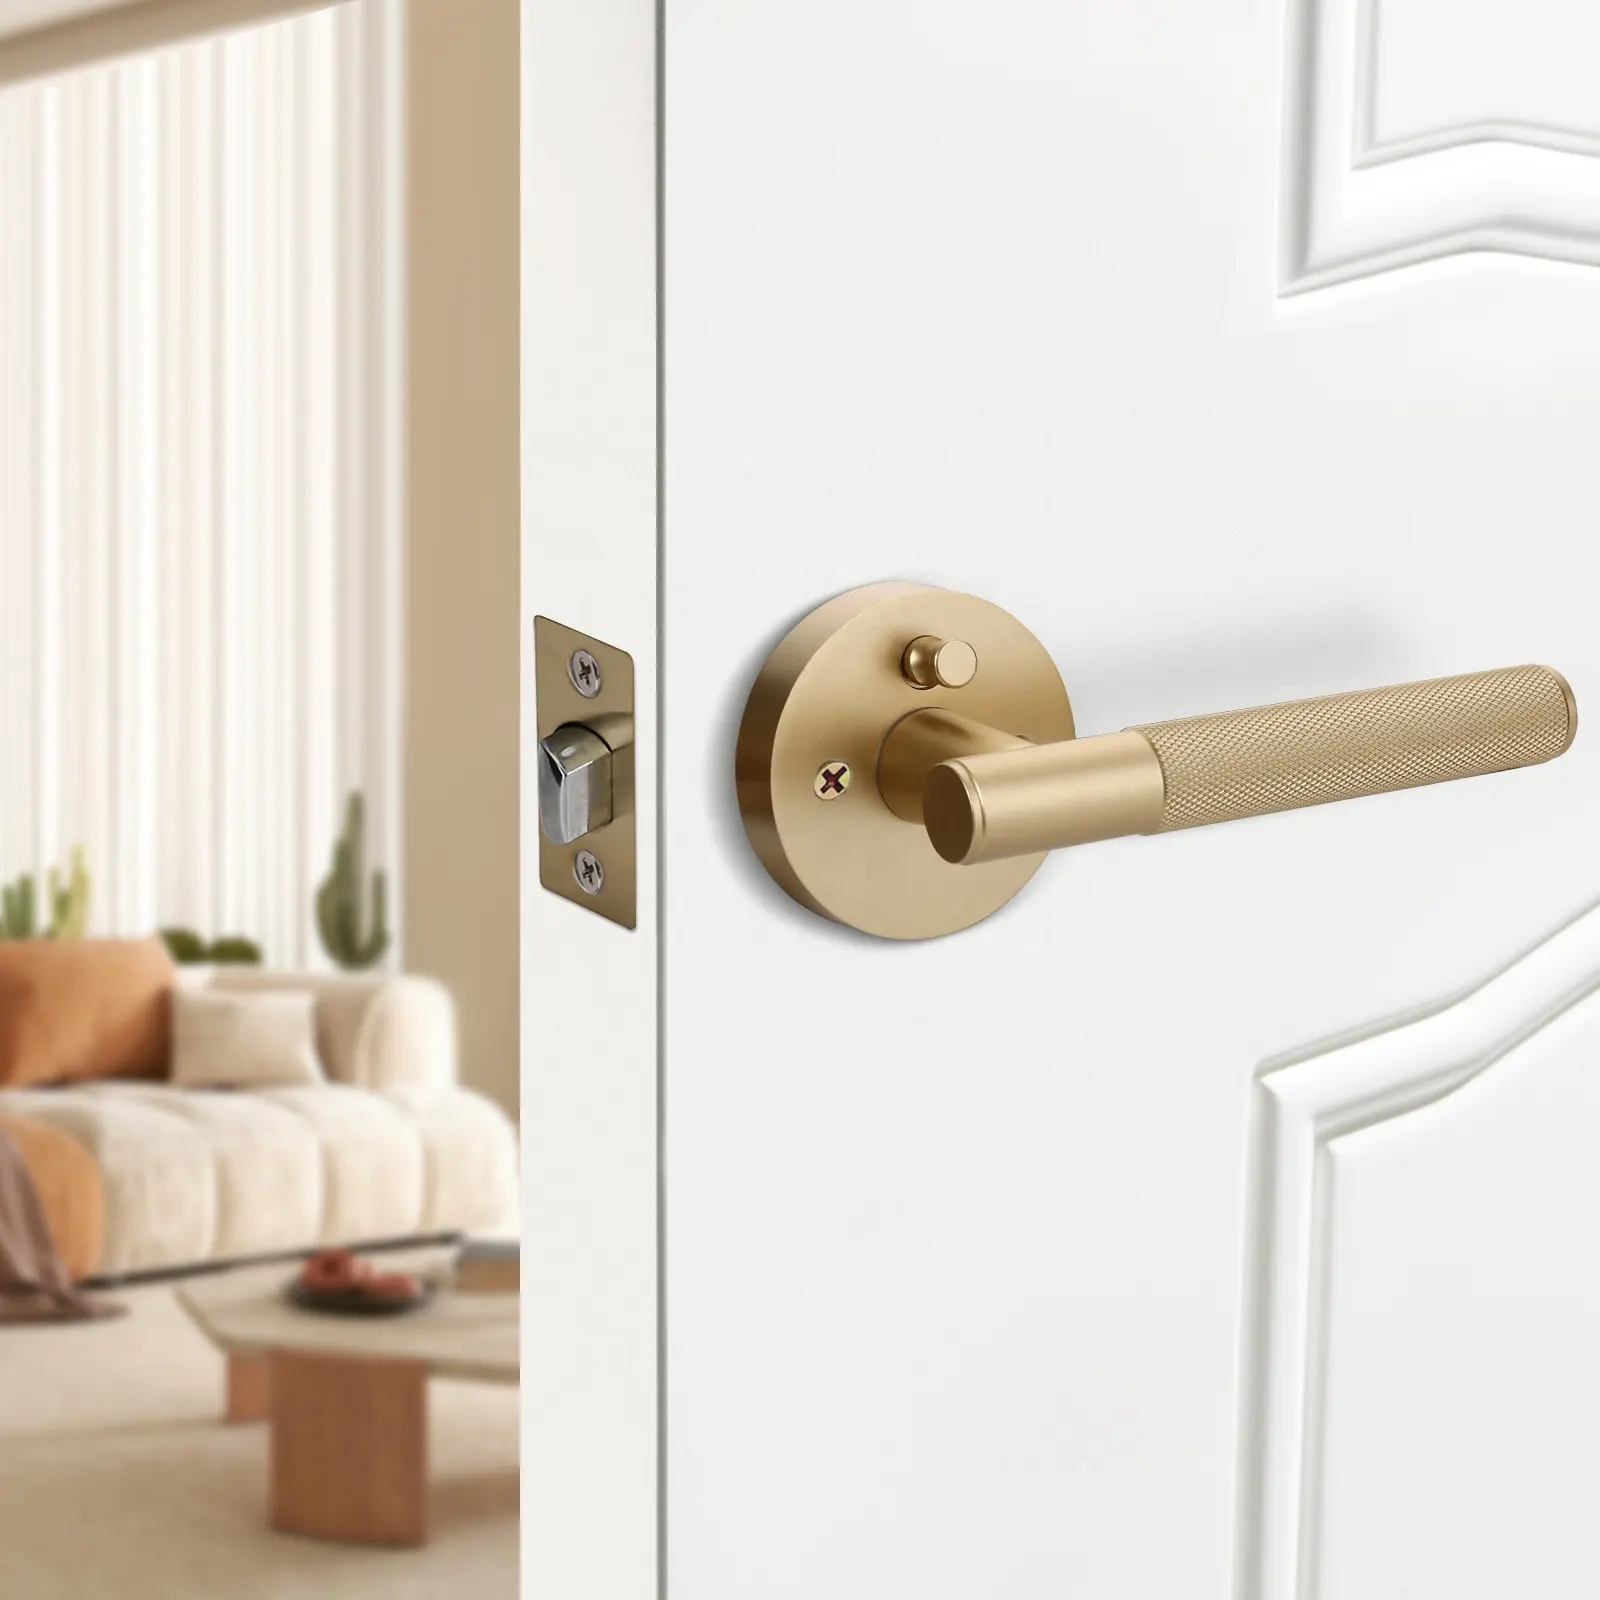 Manija de puerta interior de oro mate pintada americana con cerradura de privacidad para interiores de casas de lujo